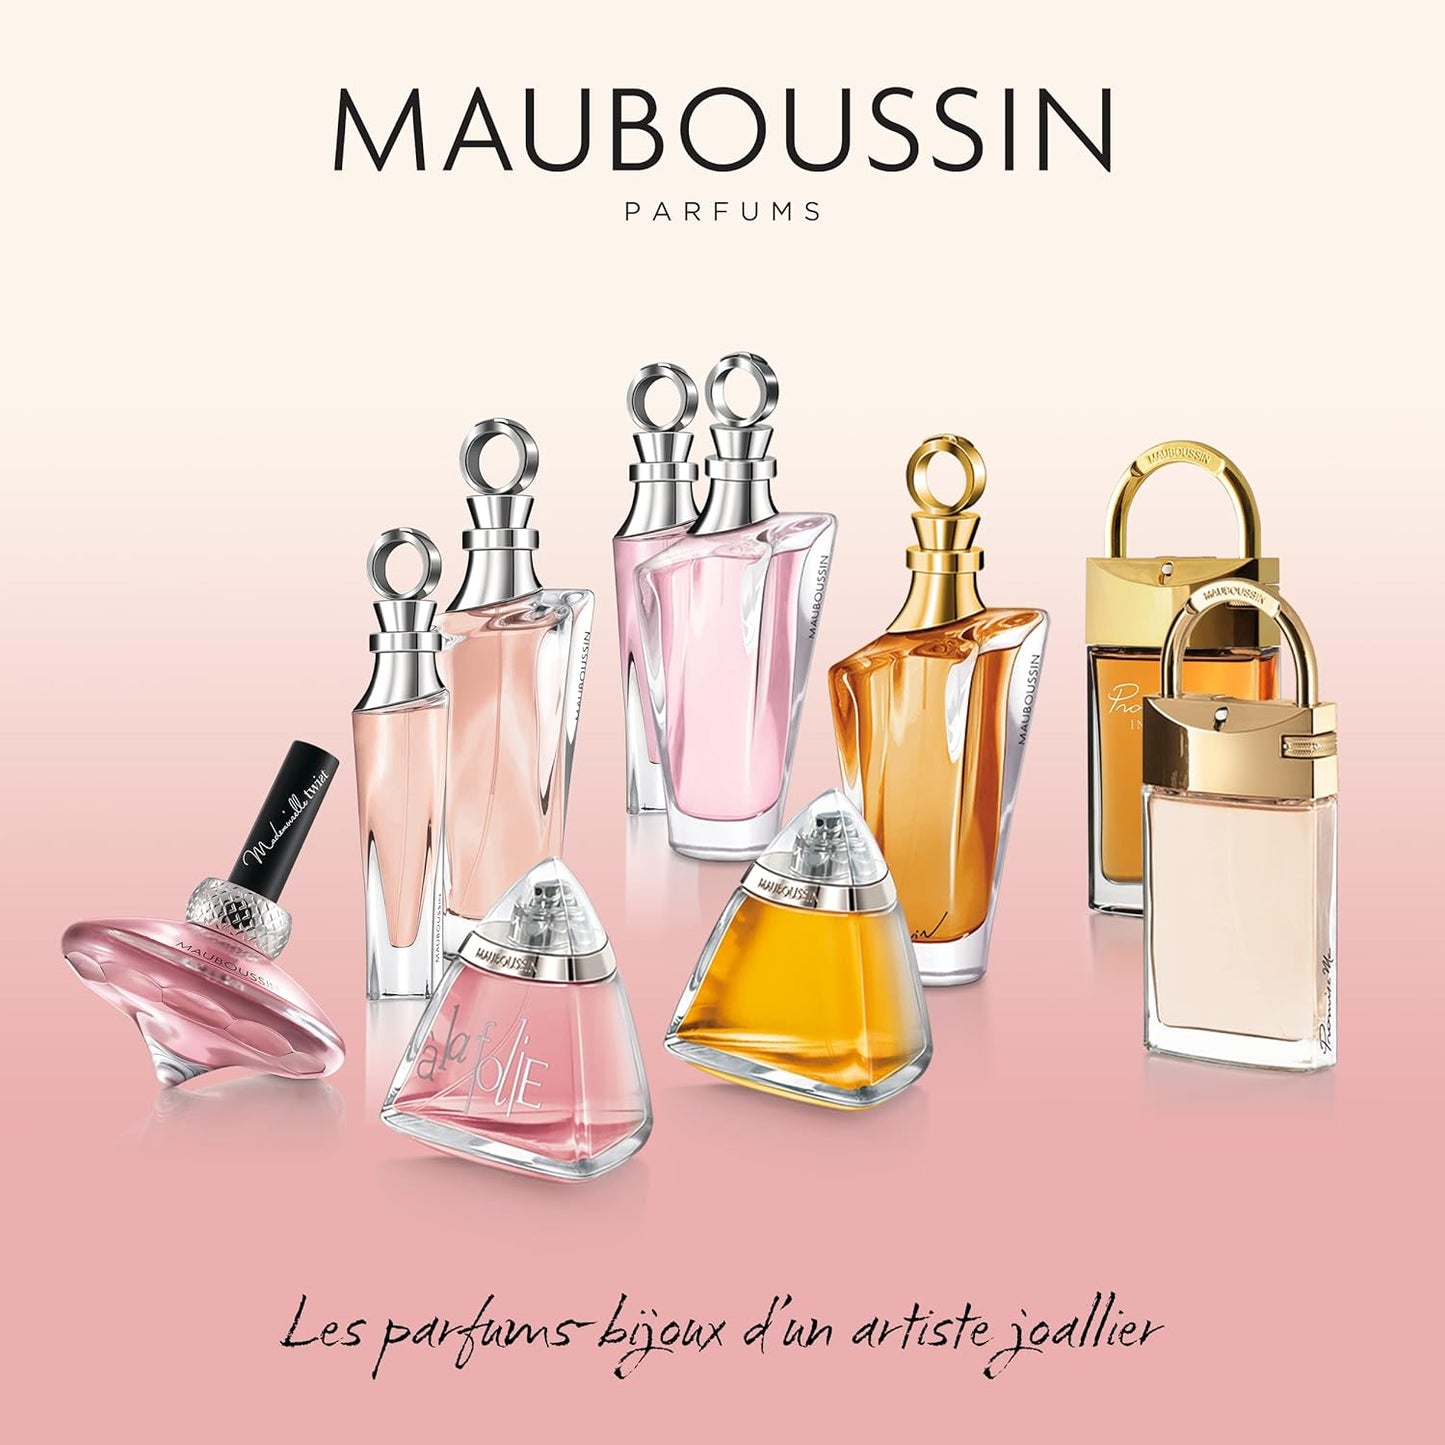 Mauboussin - A La Folie 100ml (3.3 Fl Oz) - Eau de Parfum for Women - Floral & Oriental Scents